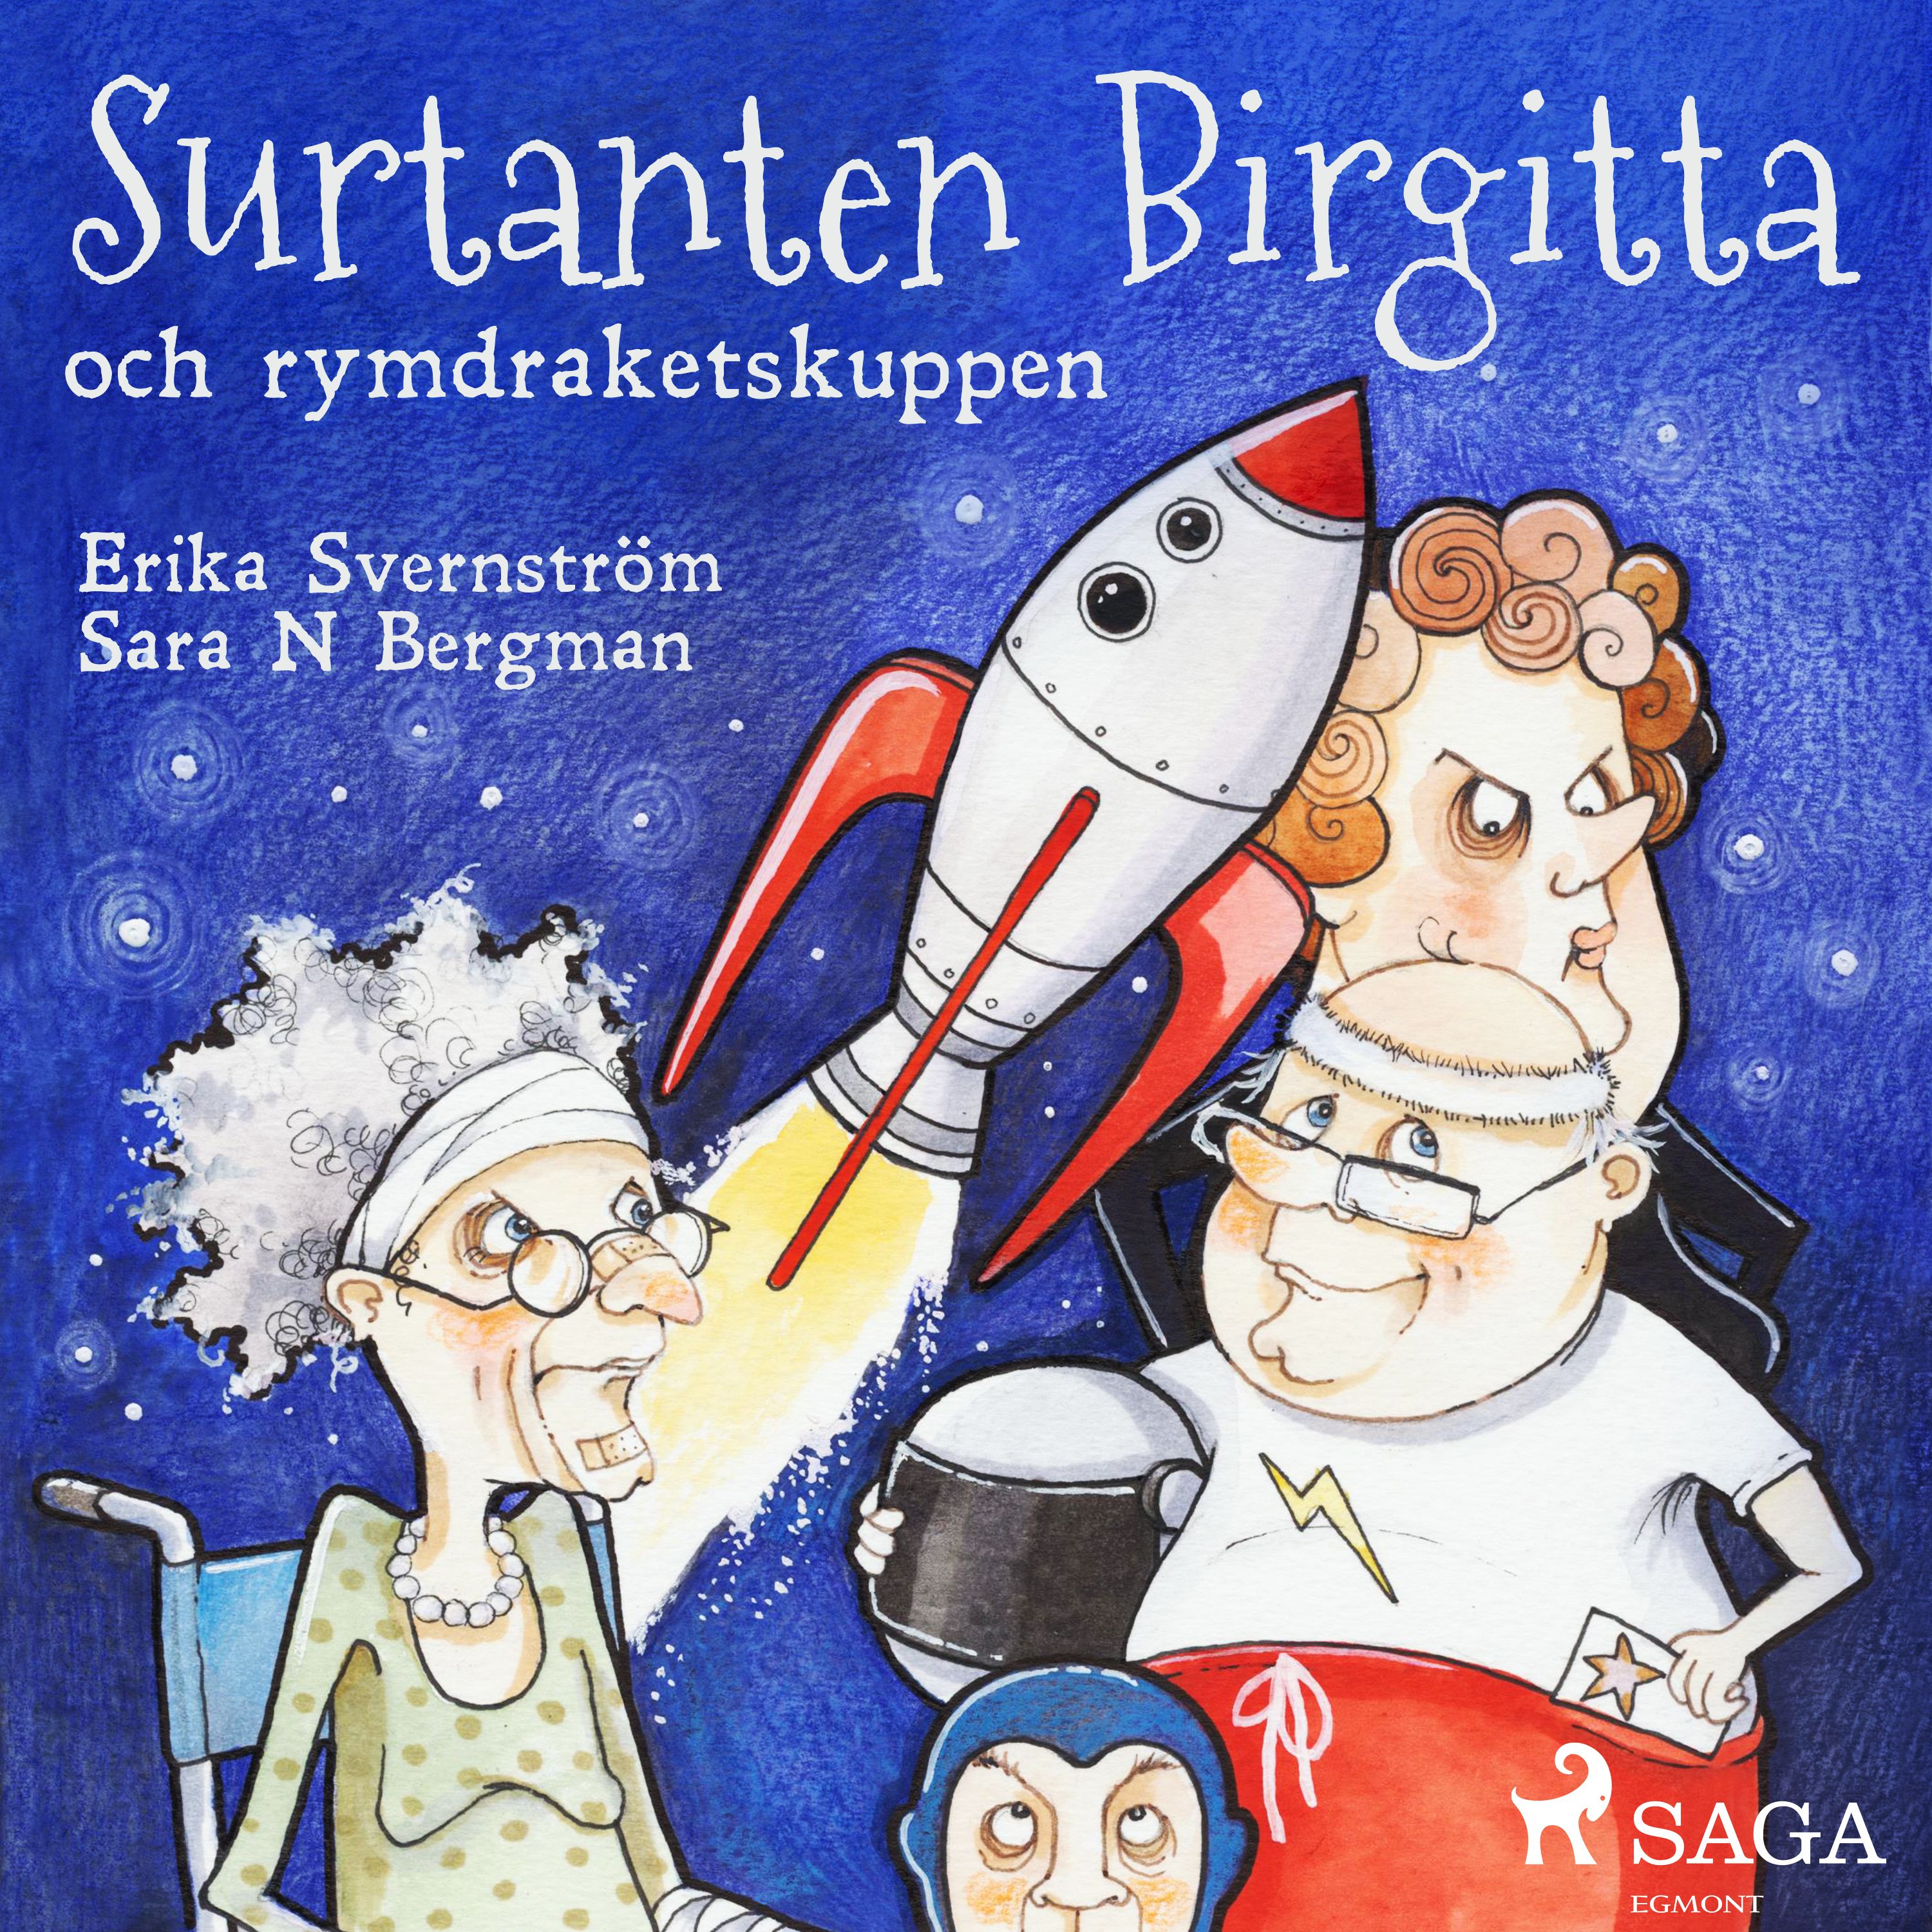 Surtanten Birgitta och rymdraketskuppen, audiobook by Erika Svernström